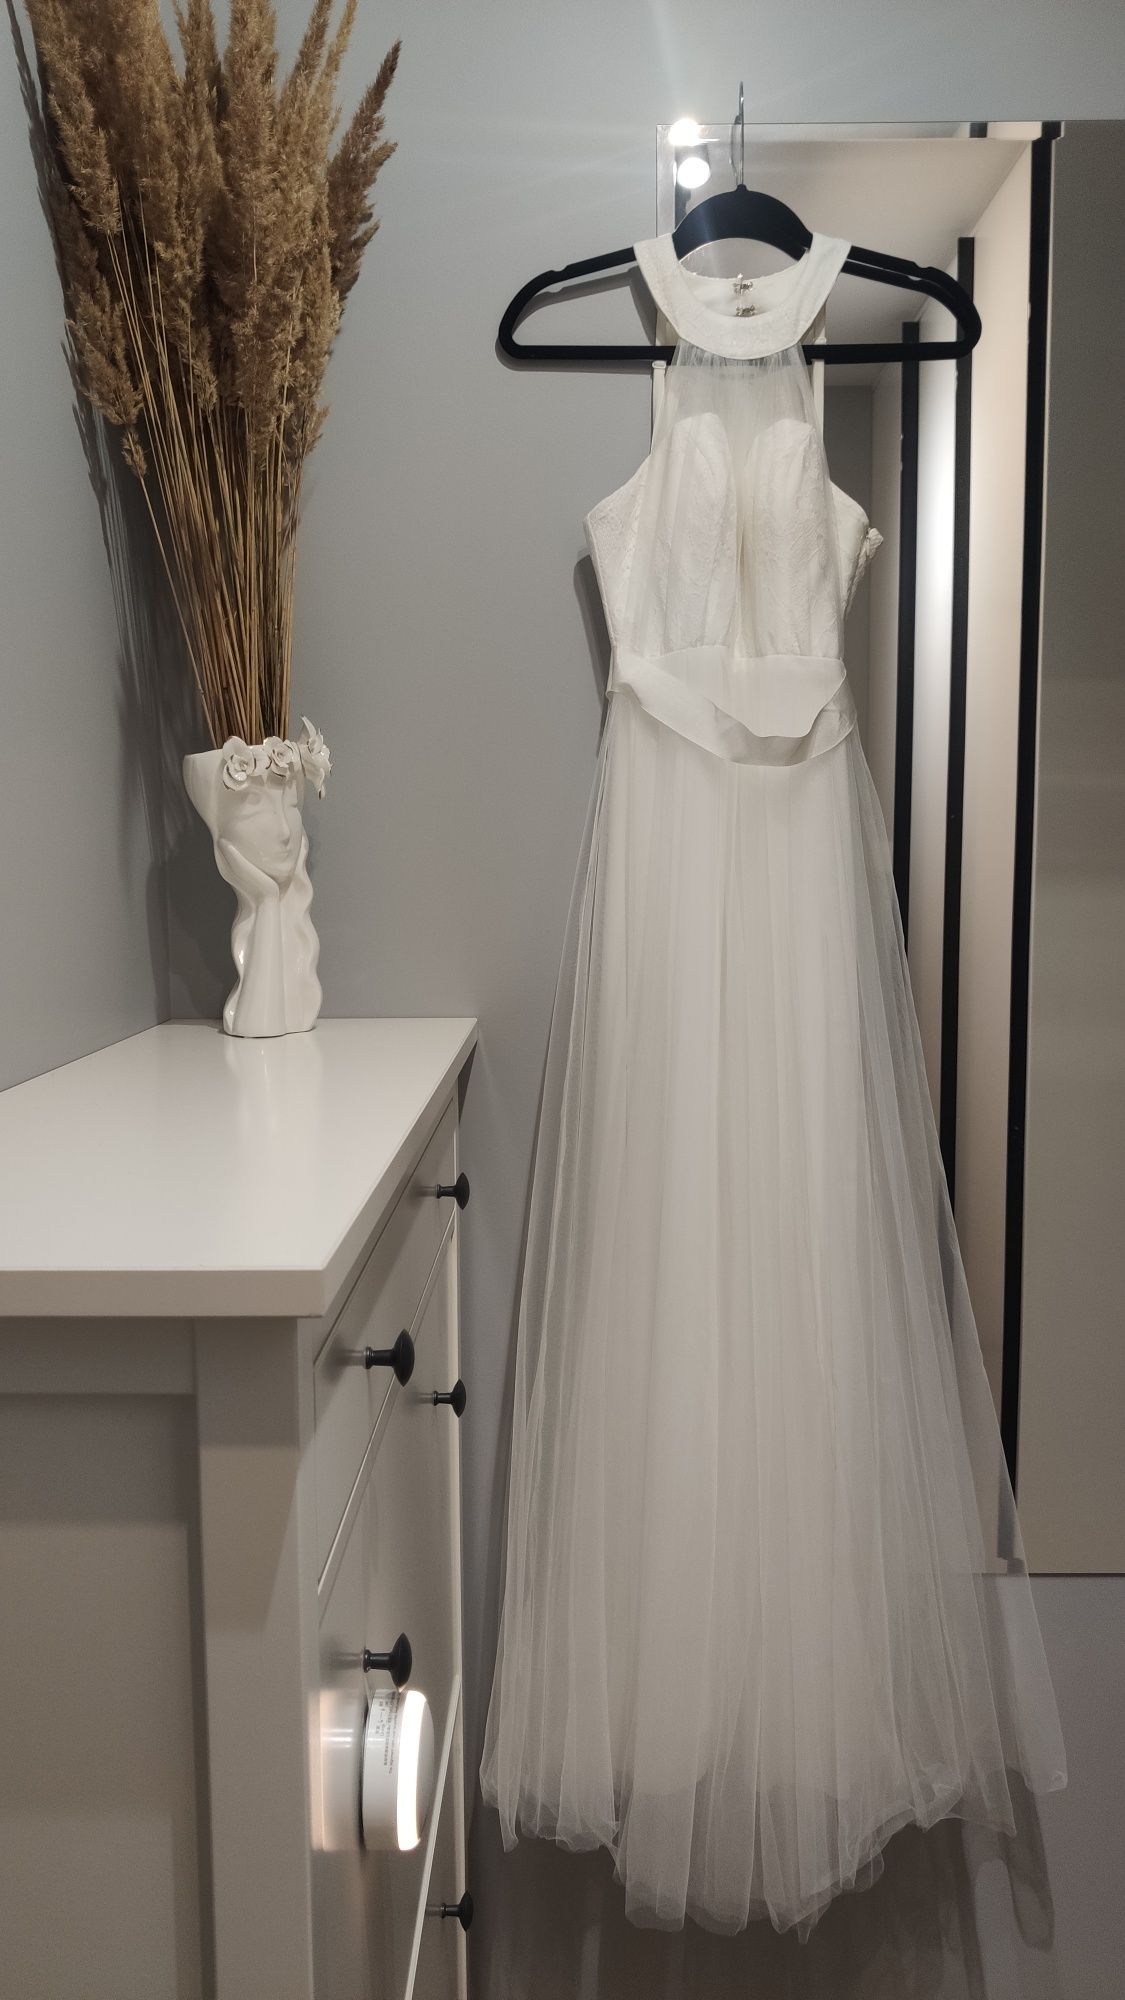 Biała, delikatna suknia ślubna. Ślub, poprawiny, z usztywnieniami